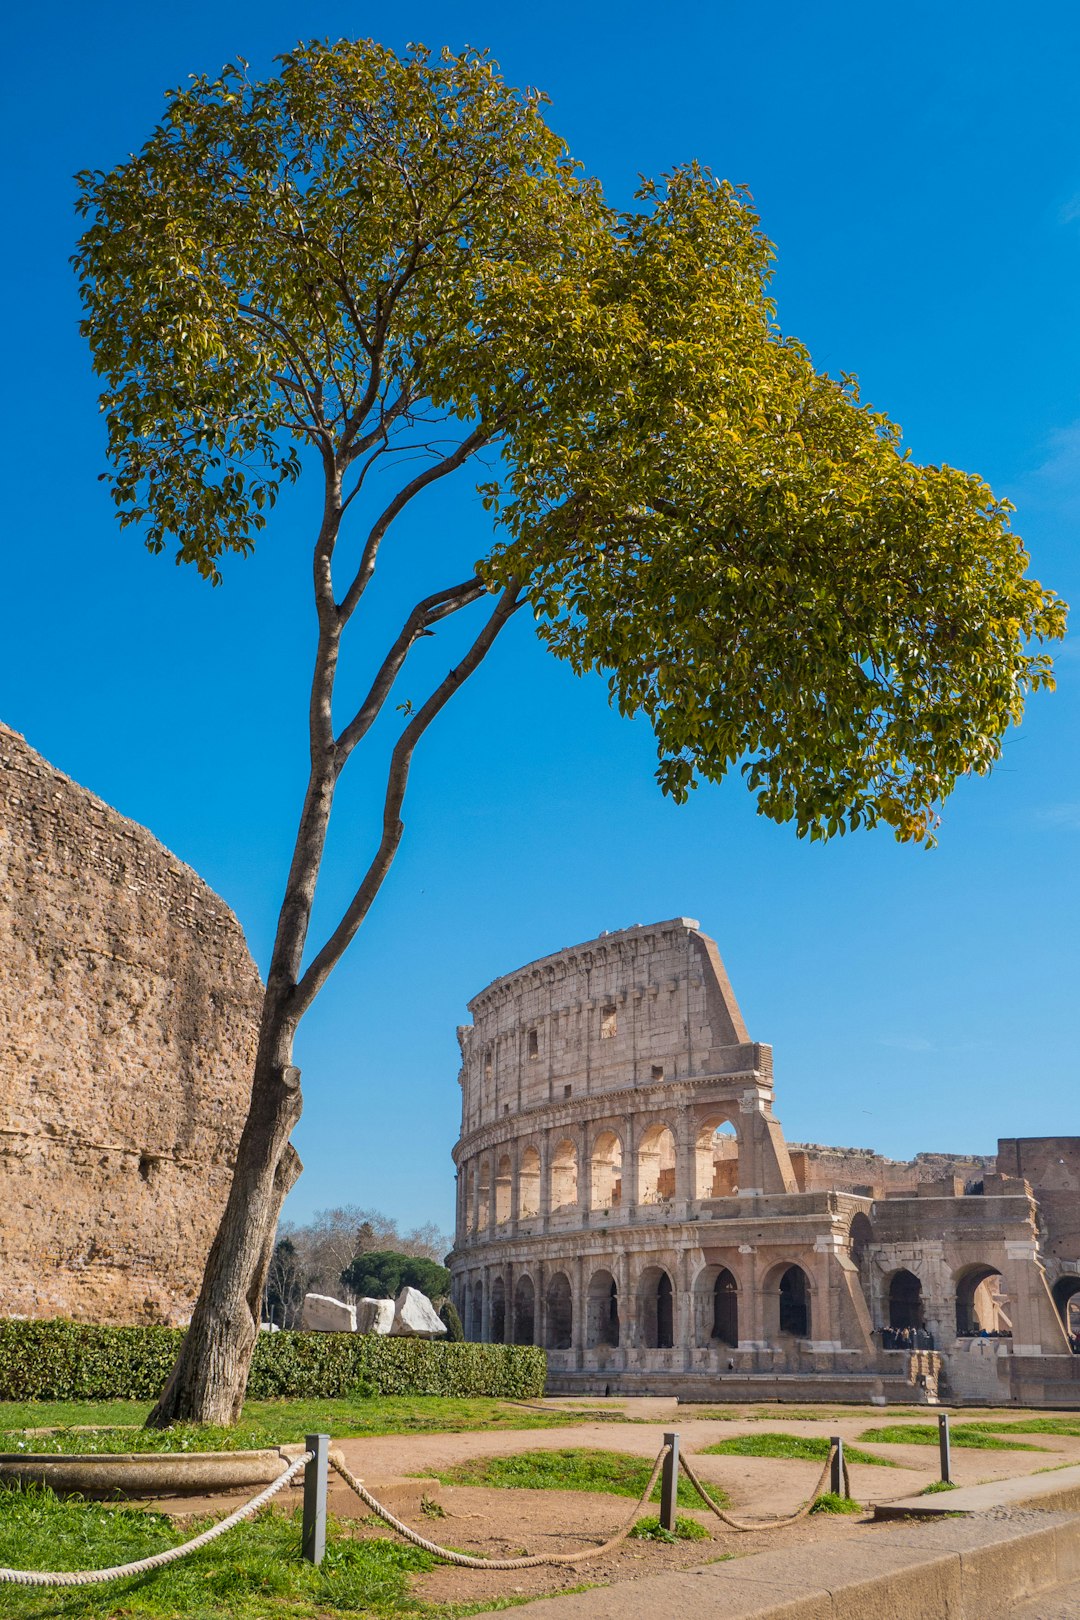 Landmark photo spot Colosseum Trajan's Market